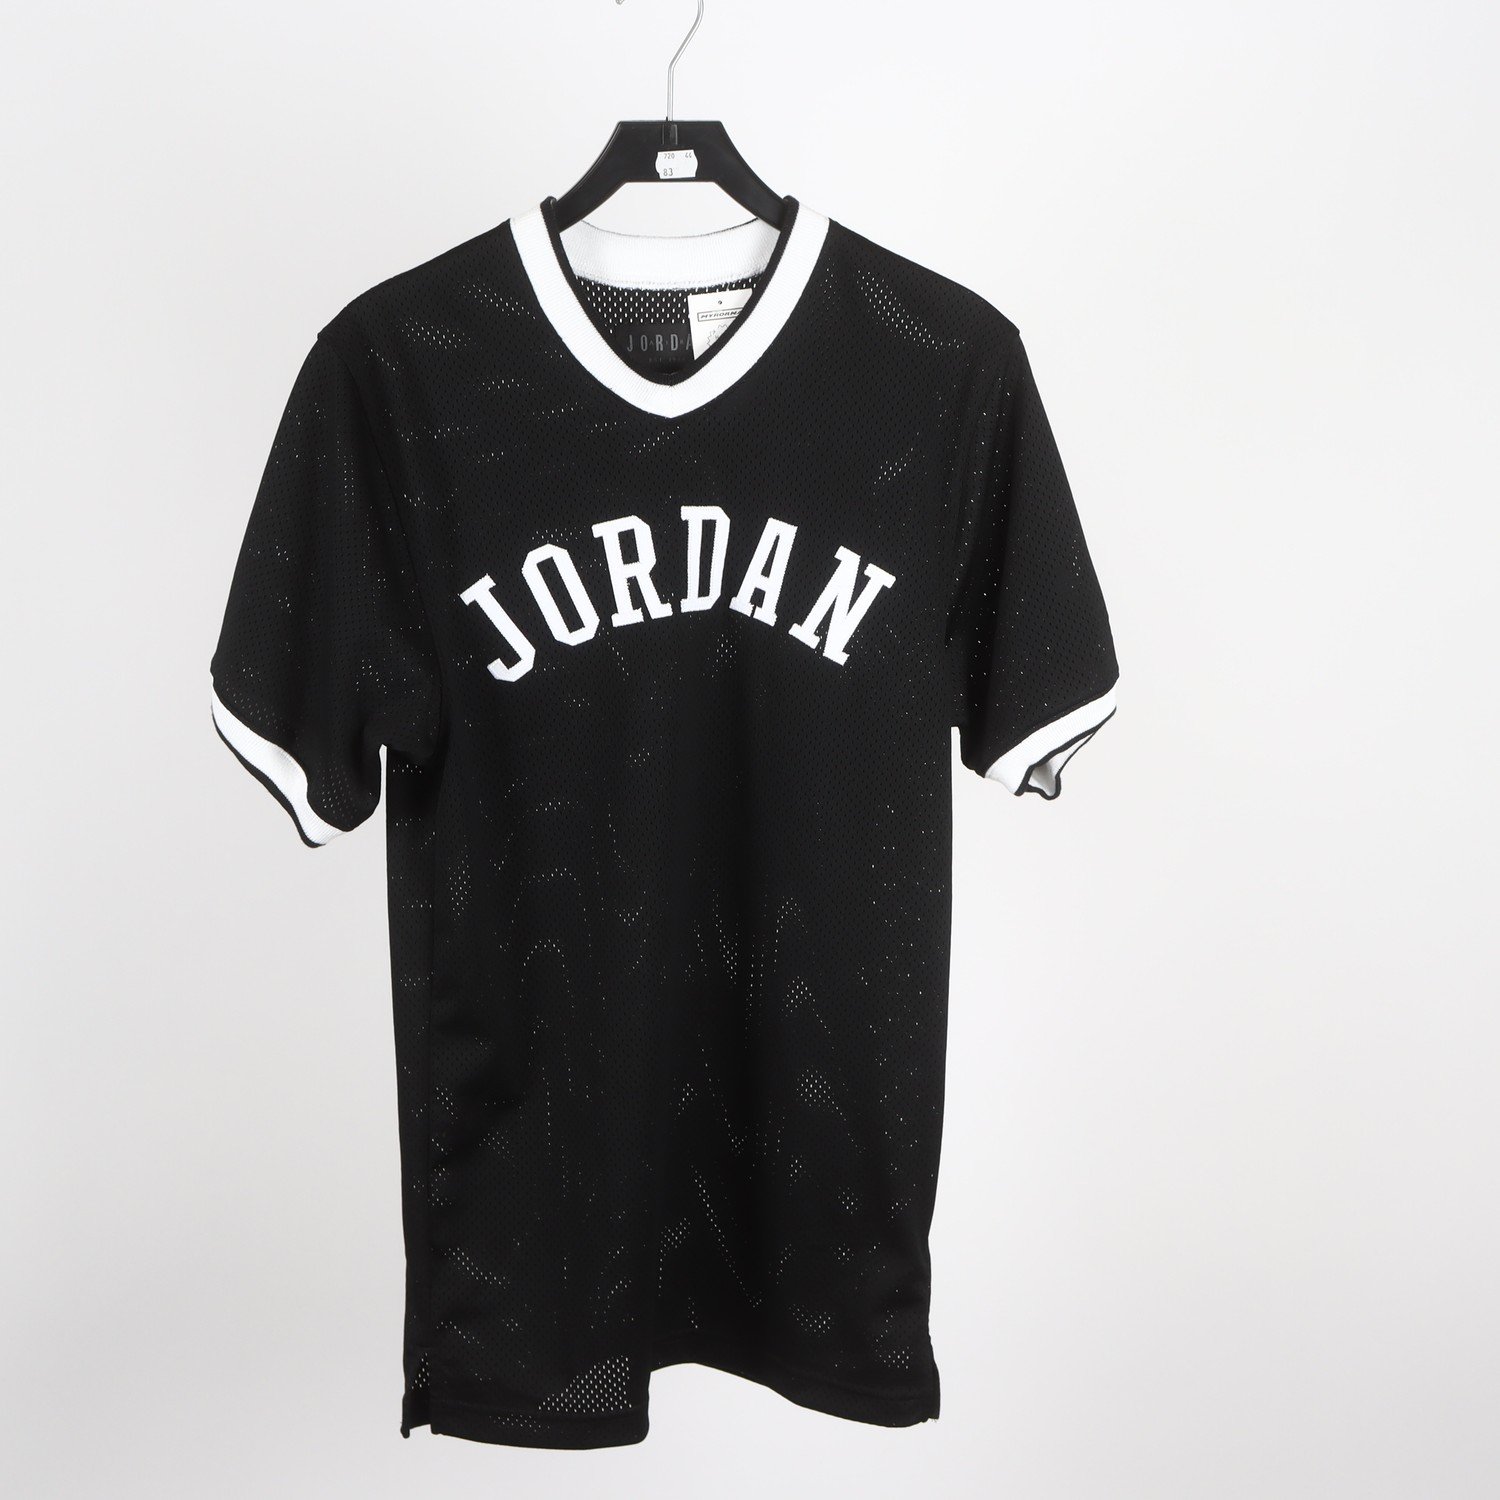 Sporttröja, Jordan, svart, stl. XS